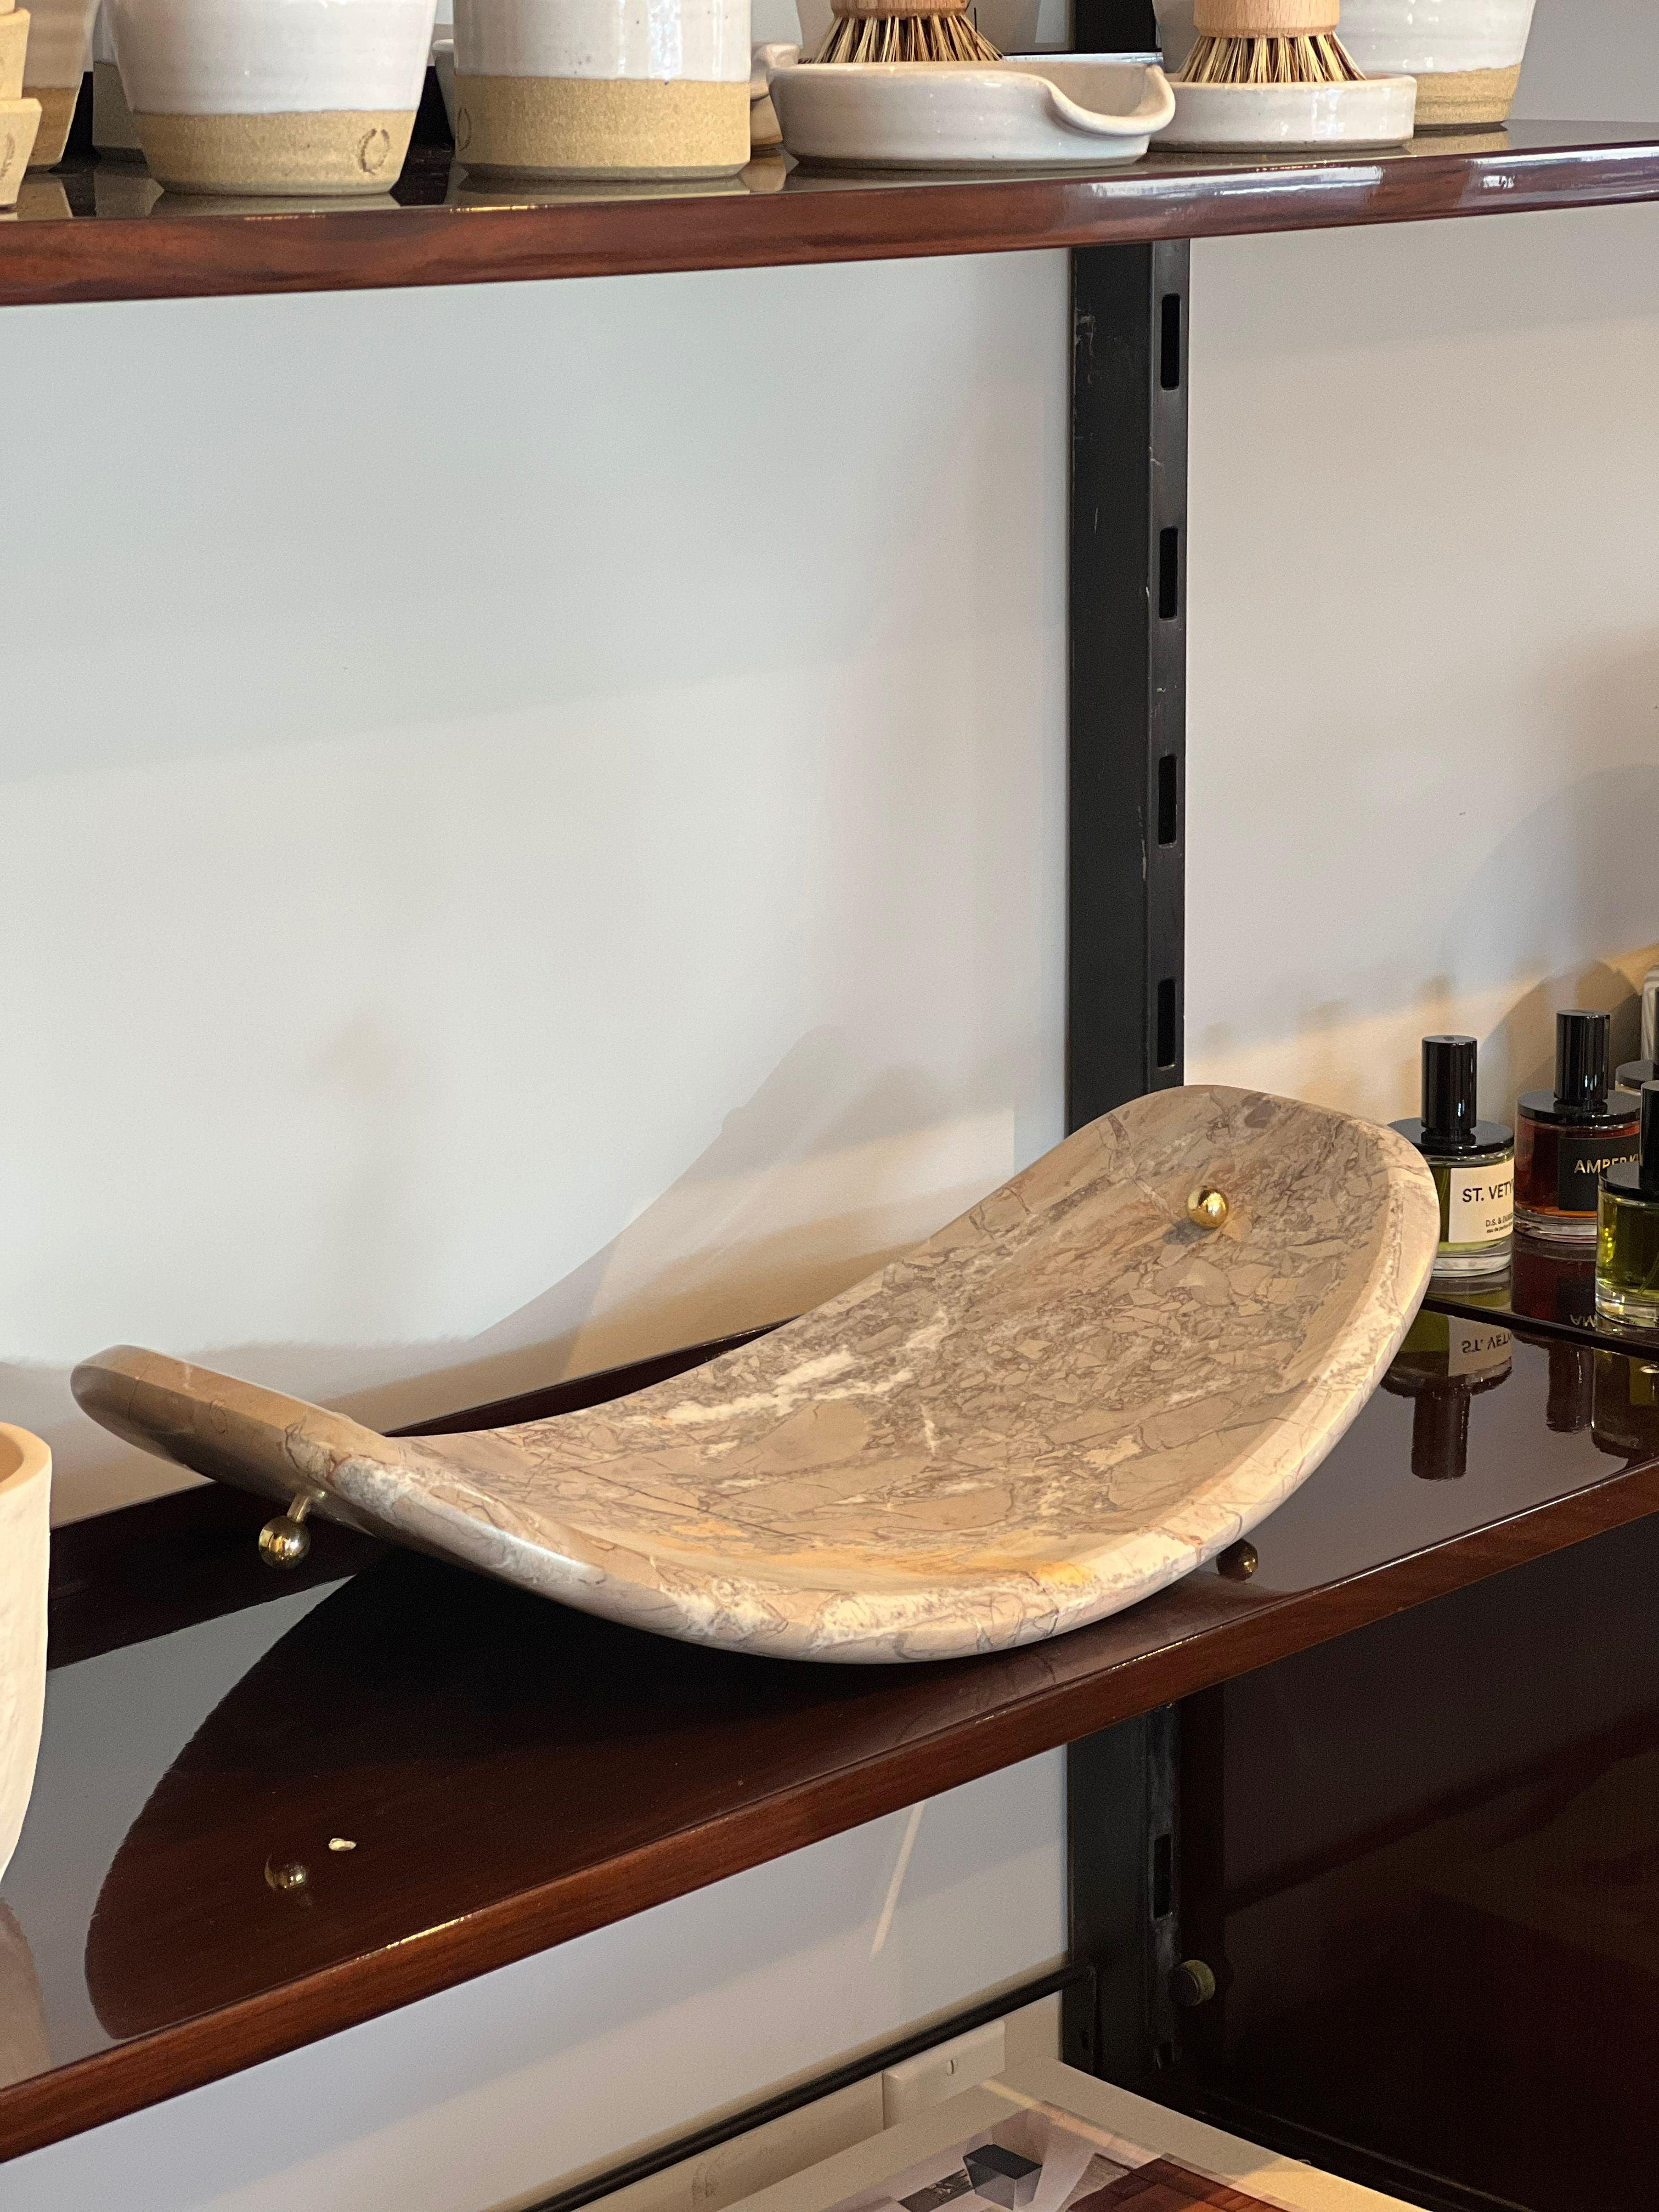 Die aus Breccia-Marmor gefertigte Nupe-Schale ist mit schönen Messingdetails verziert.  Diese attraktive Schale bereichert Ihren Esstisch als Mittelstück oder Obstschale. Entworfen von Luca Erba für Collection Particuliere.

Luca Erba ist ein